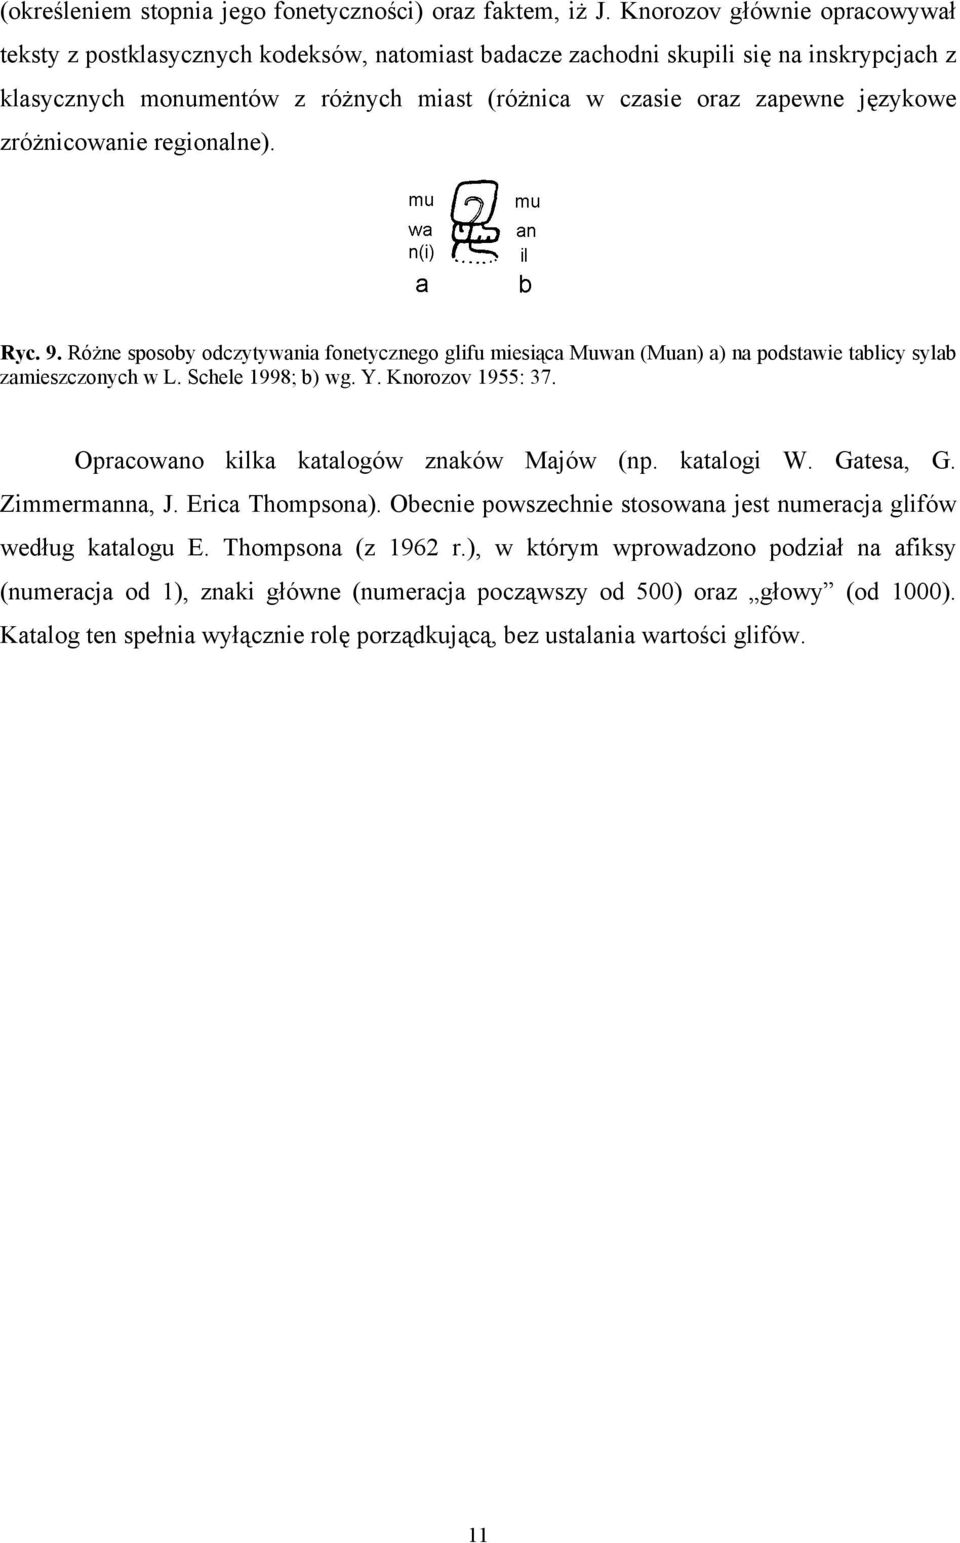 zróżnicowanie regionalne). Ryc. 9. Różne sposoby odczytywania fonetycznego glifu miesiąca Muwan (Muan) a) na podstawie tablicy sylab zamieszczonych w L. Schele 1998; b) wg. Y. Knorozov 1955: 37.